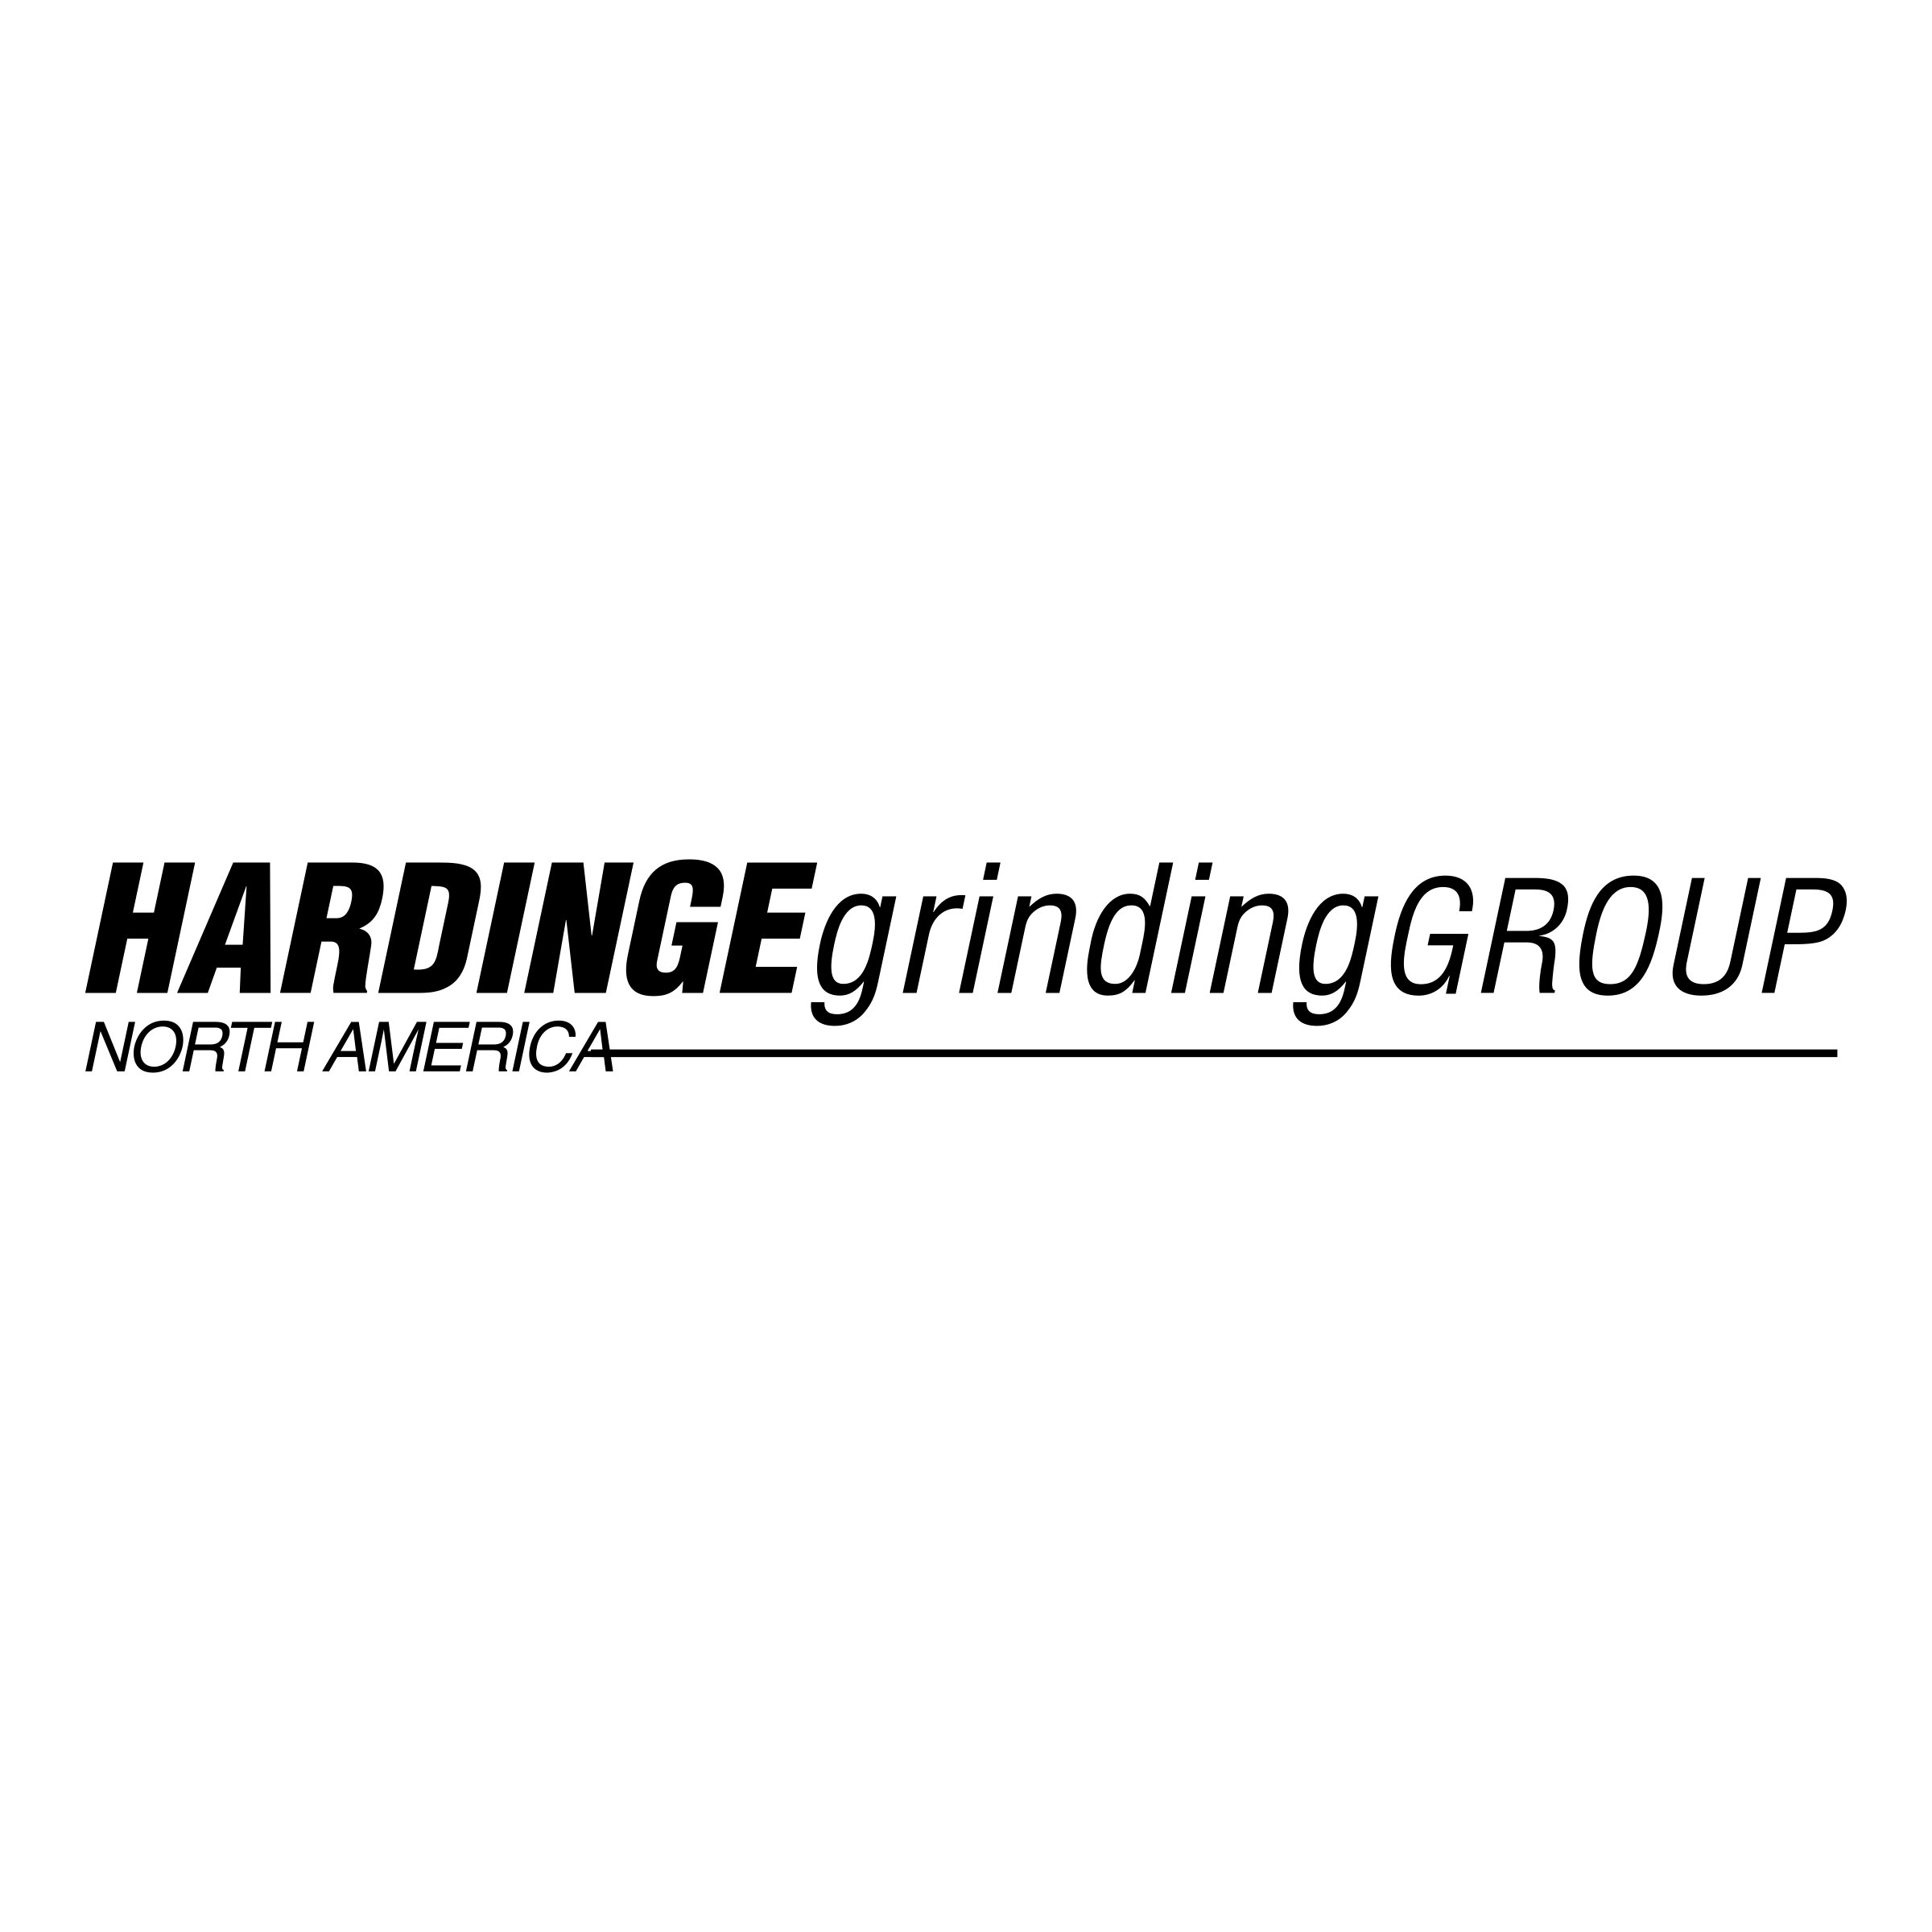 Hardinge Logo - Hardinge Grinding Group Logo PNG Transparent & SVG Vector